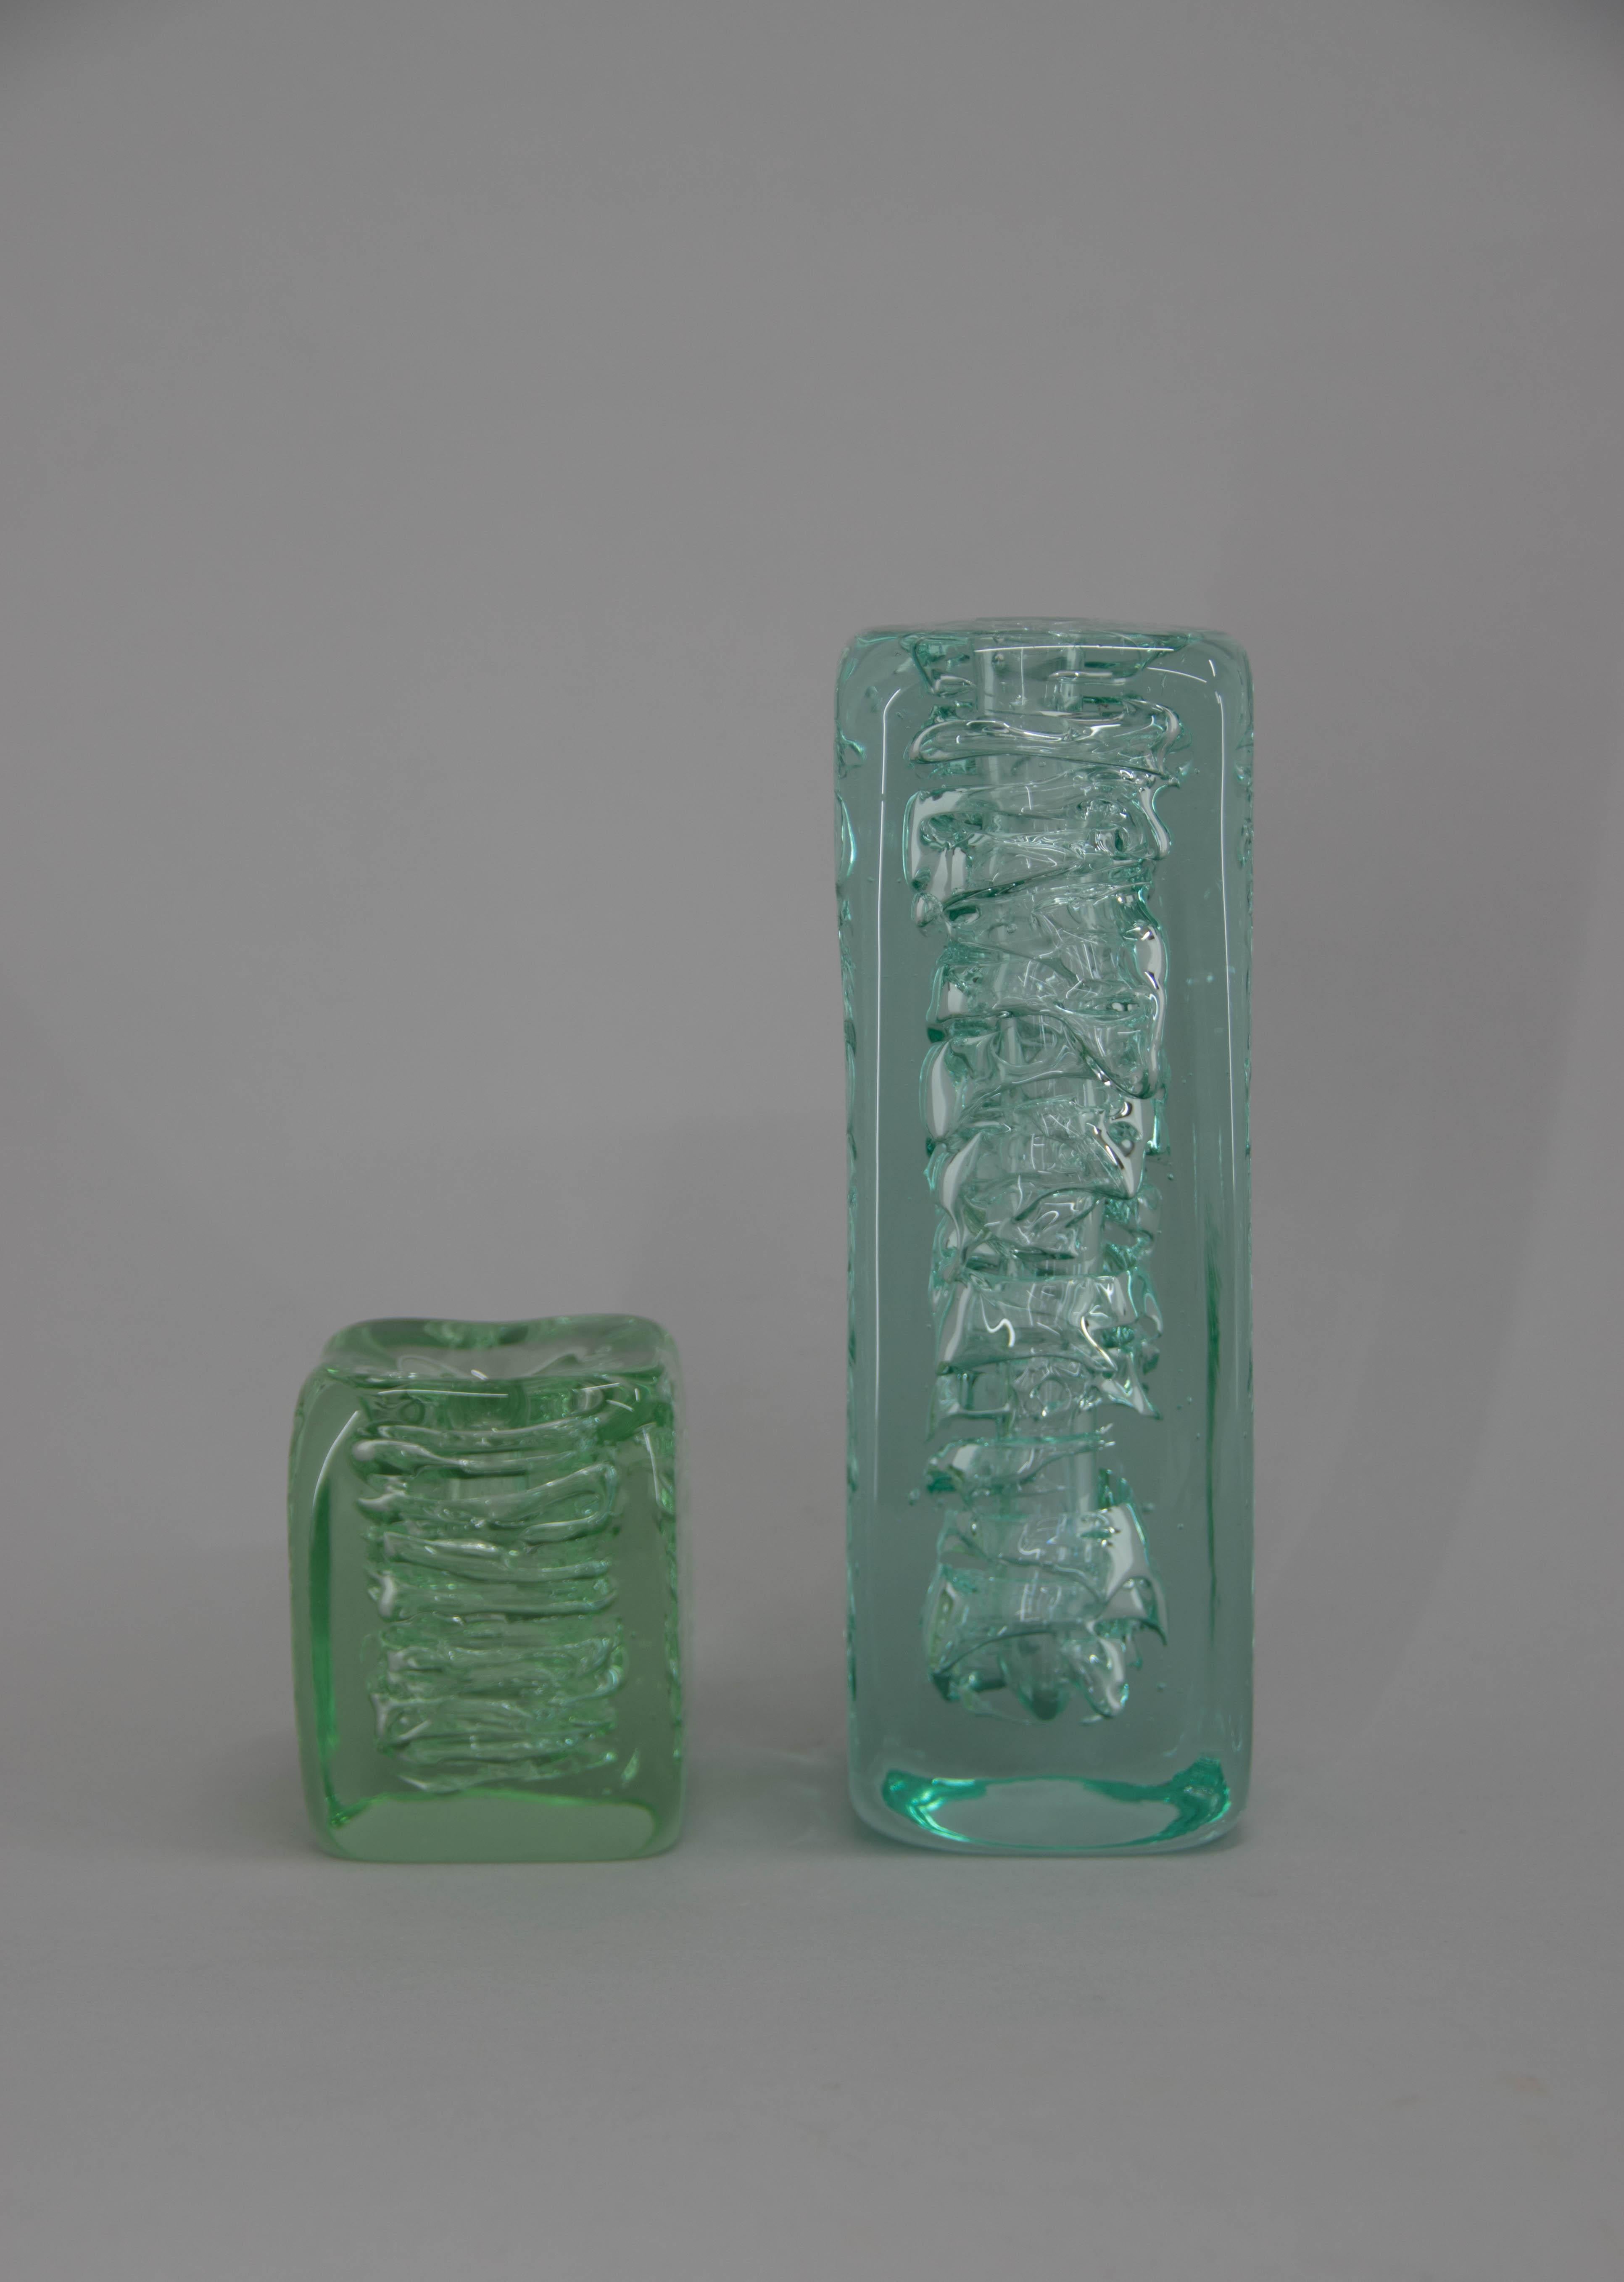 Vases en verre d'art attribués à Frantisek Vizner pour Skrdlovice, Tchécoslovaquie, vers 1970. 
Dimensions du plus petit vase :
H : 10cm, L : 8cm, P : 8cm.
Les deux articles sont en parfait état.